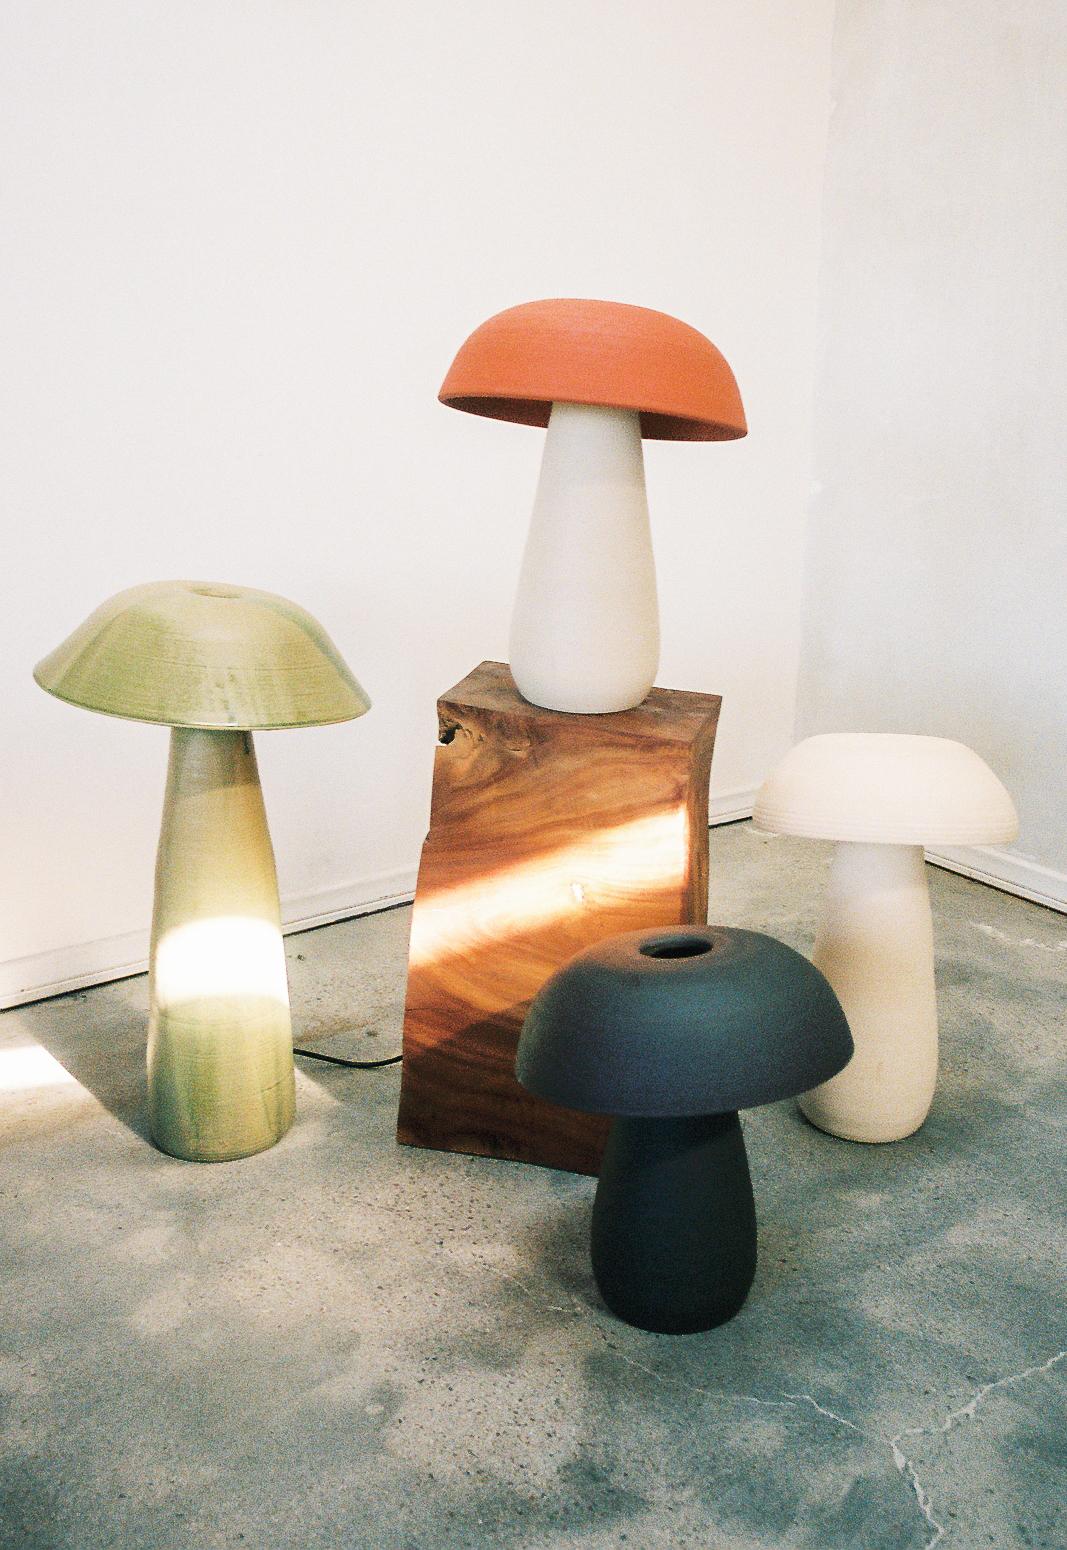 Ensemble de 4 lampes champignons par Nick Pourfard
Dimensions : Petit (x3) Ø 33 x H 38 cm.
Moyen (x1) Ø 38 x H 56 cm.
Matériaux : céramique.
Différentes finitions disponibles. Veuillez nous contacter.

Toutes nos lampes peuvent être câblées en